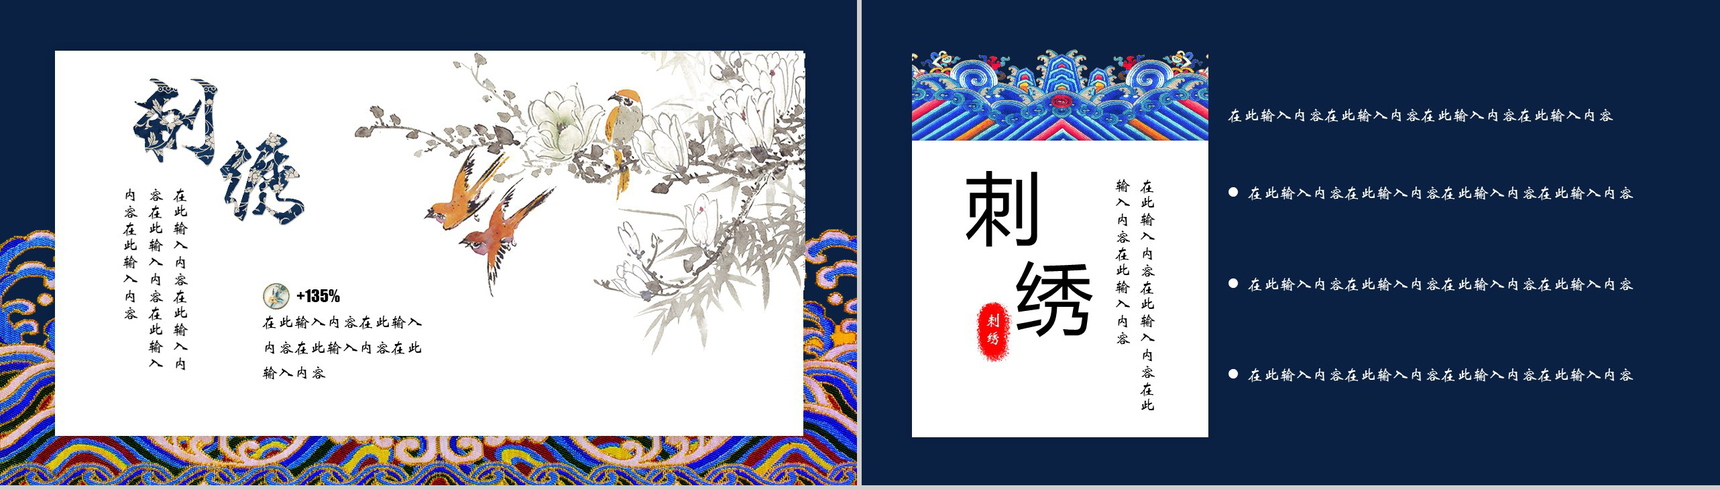 中国之美刺绣传统手艺PPT模板-3